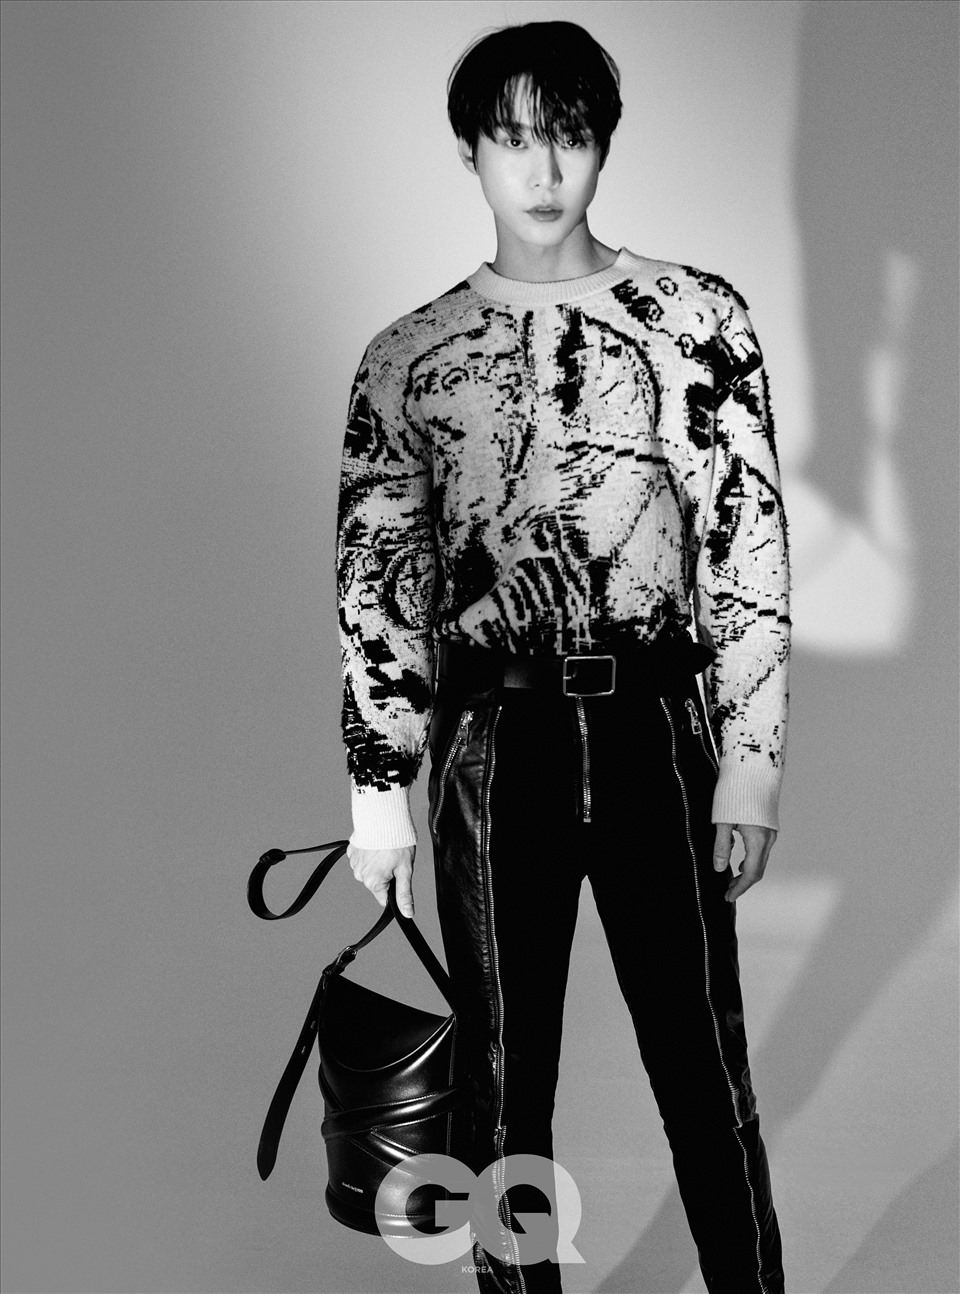 Với tư cách là một người mẫu quảng cáo cho bộ sưu tập mới của thương hiệu thời trang Anh, Doyoung (NCT) đã cho người hâm mộ thấy được một khía cạnh khác của bản thân. Ảnh: Twitter